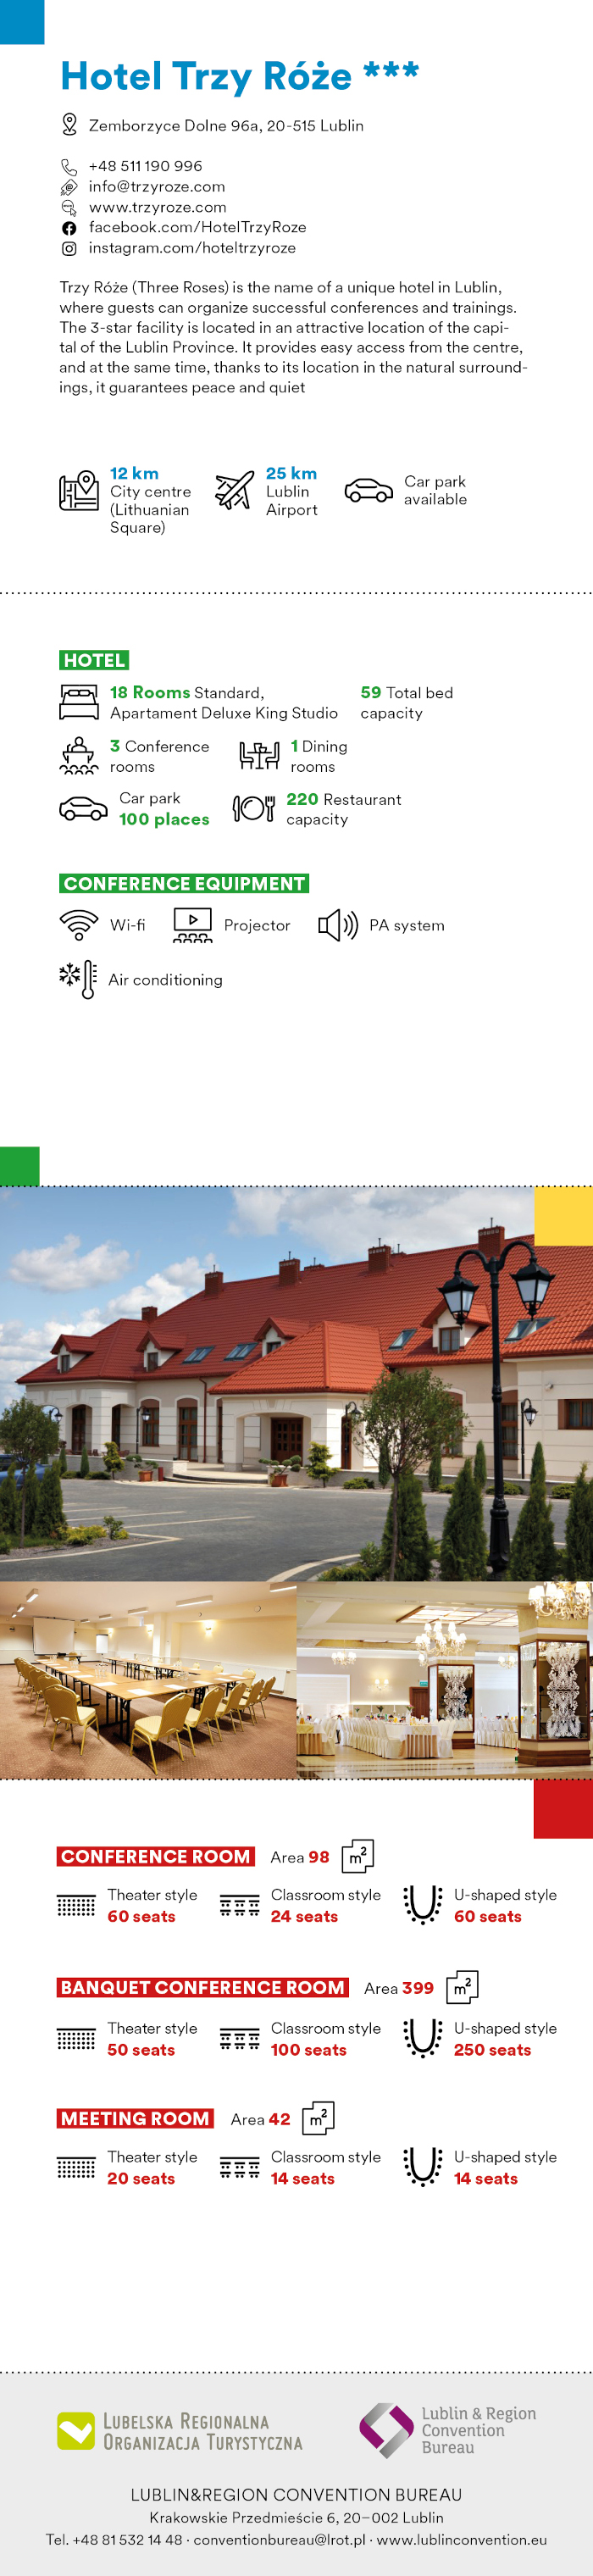 Lublin Convention Bureau Catalogue eng preview 17